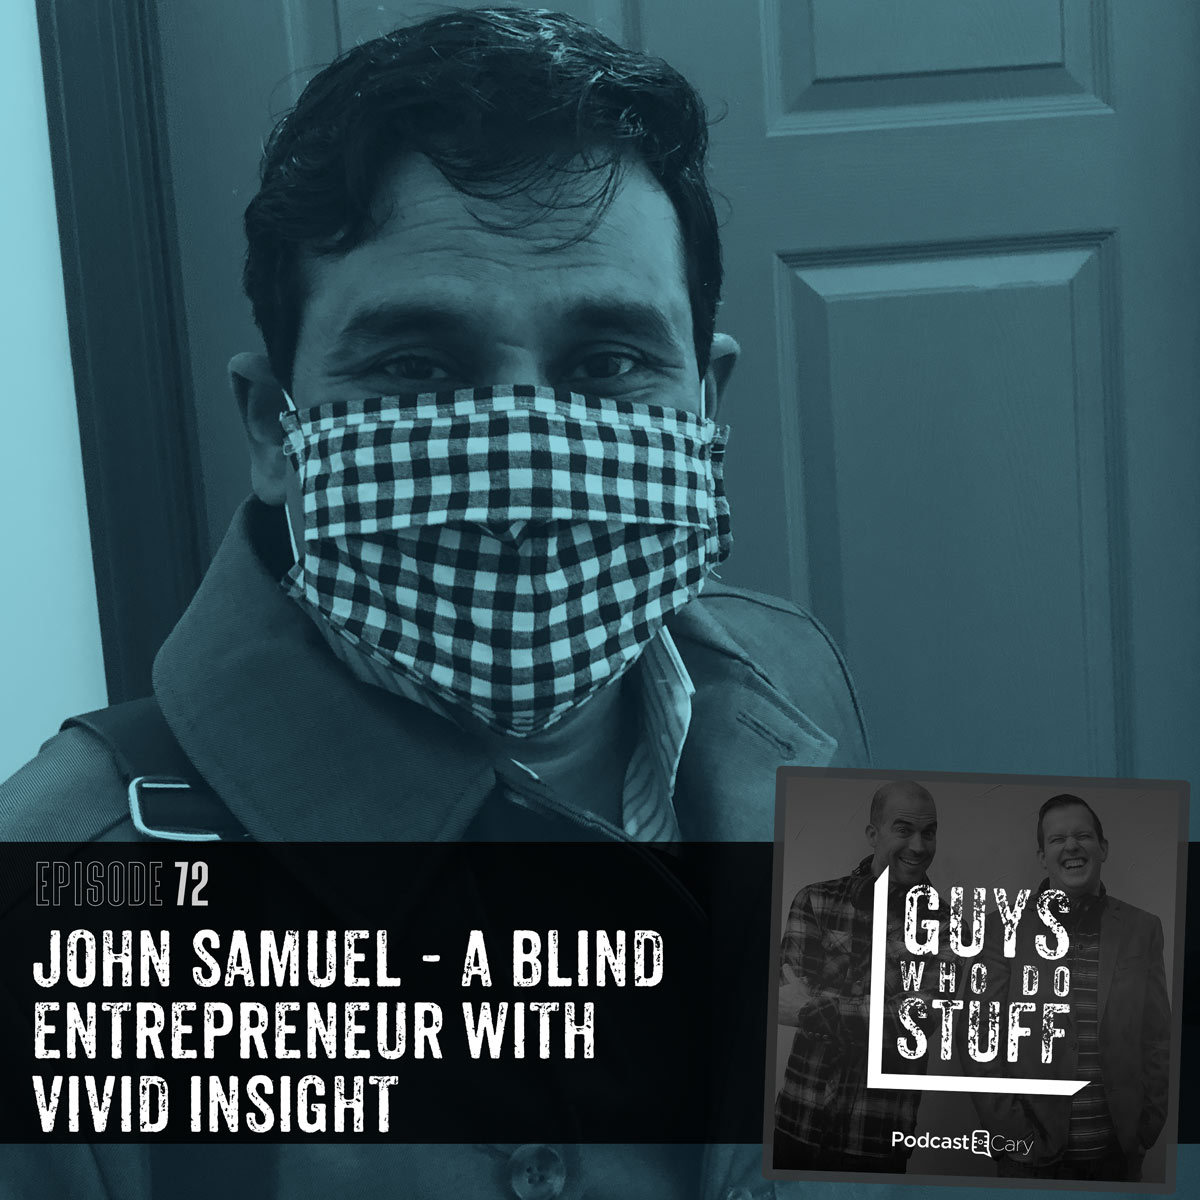 John Samuel on the guys who do stuff podcast